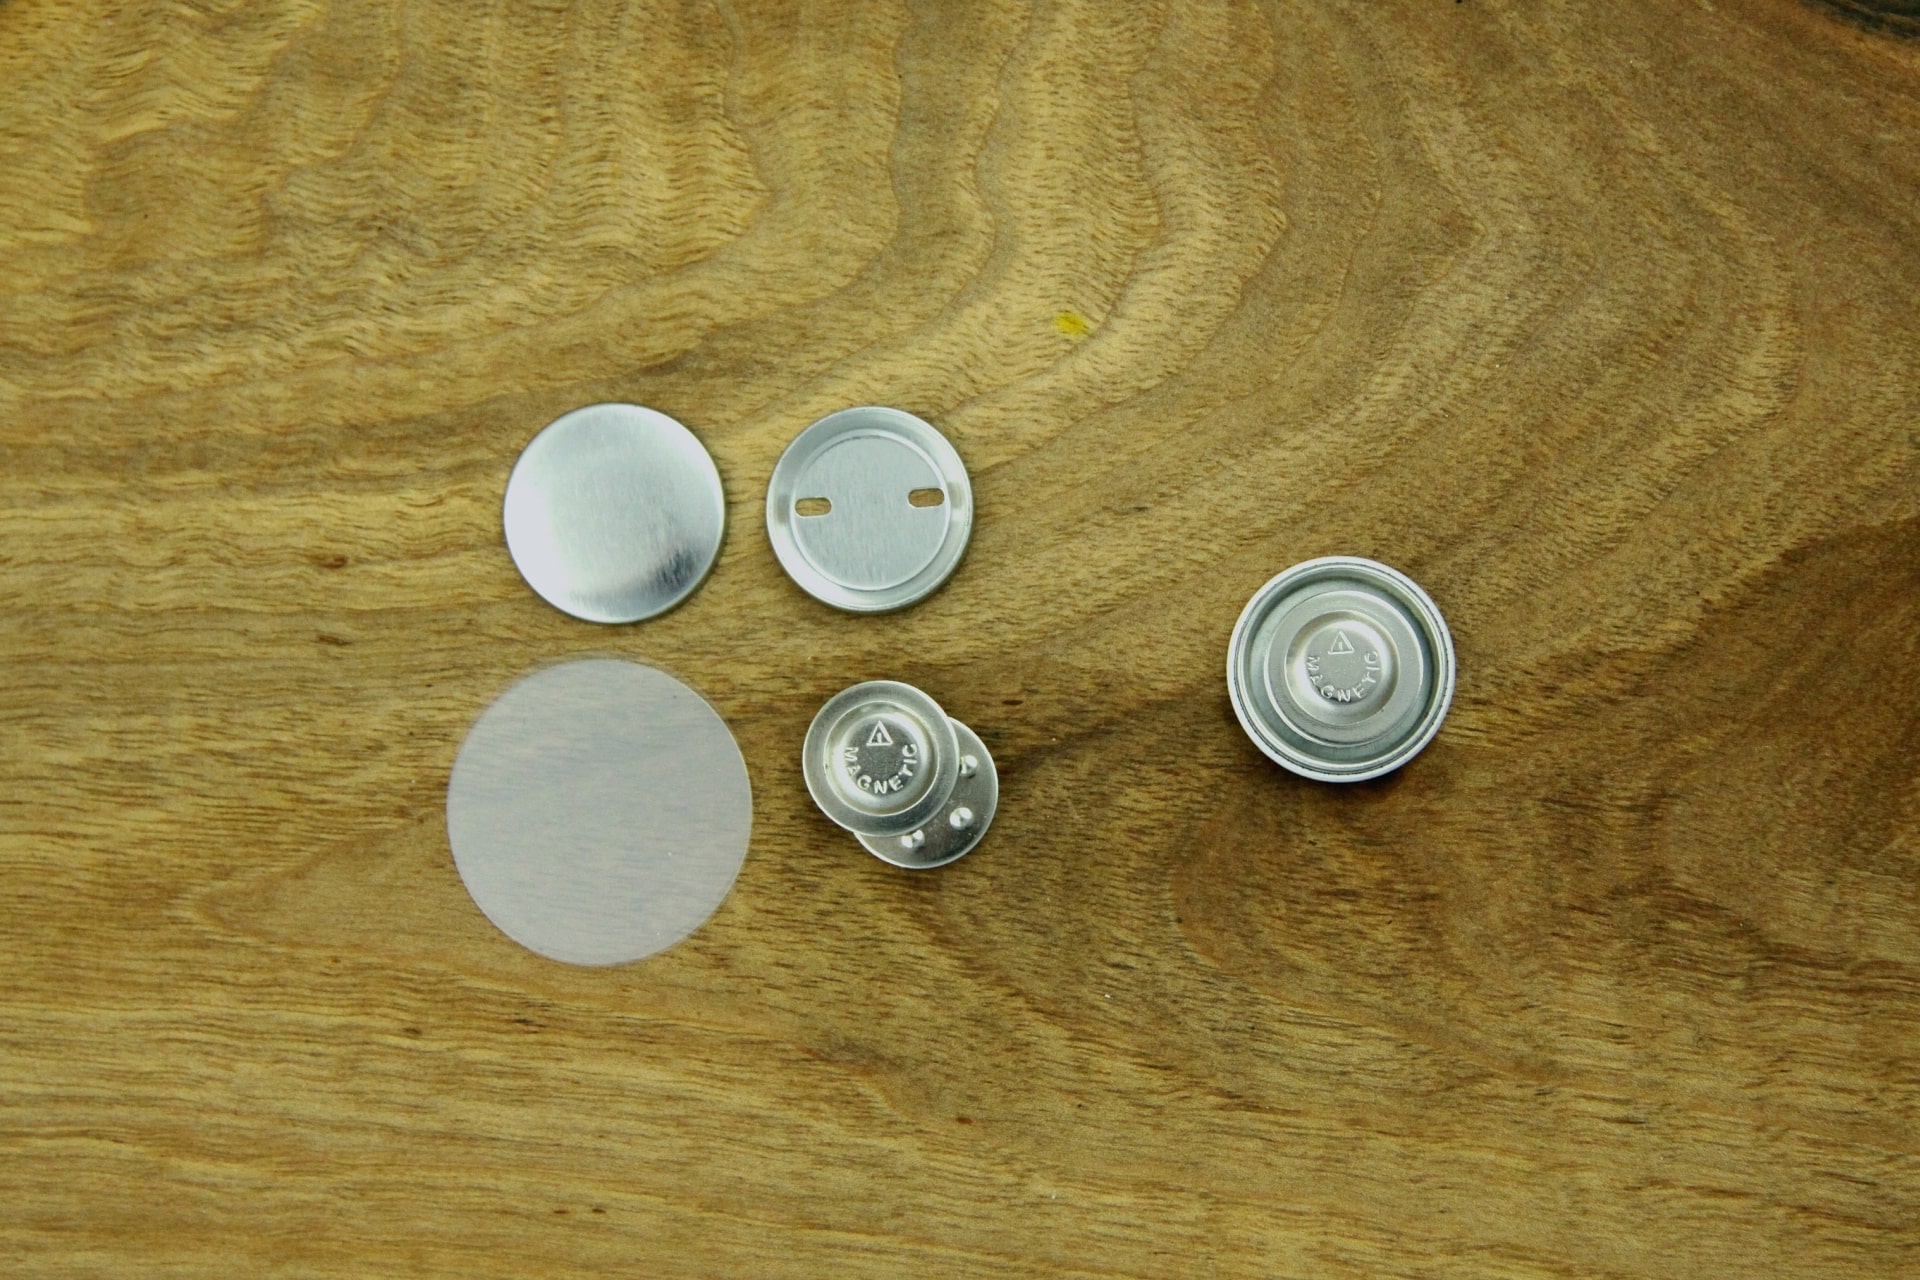 komponenty do przypinek 25mm z pojedynczym magnesem na ubranie